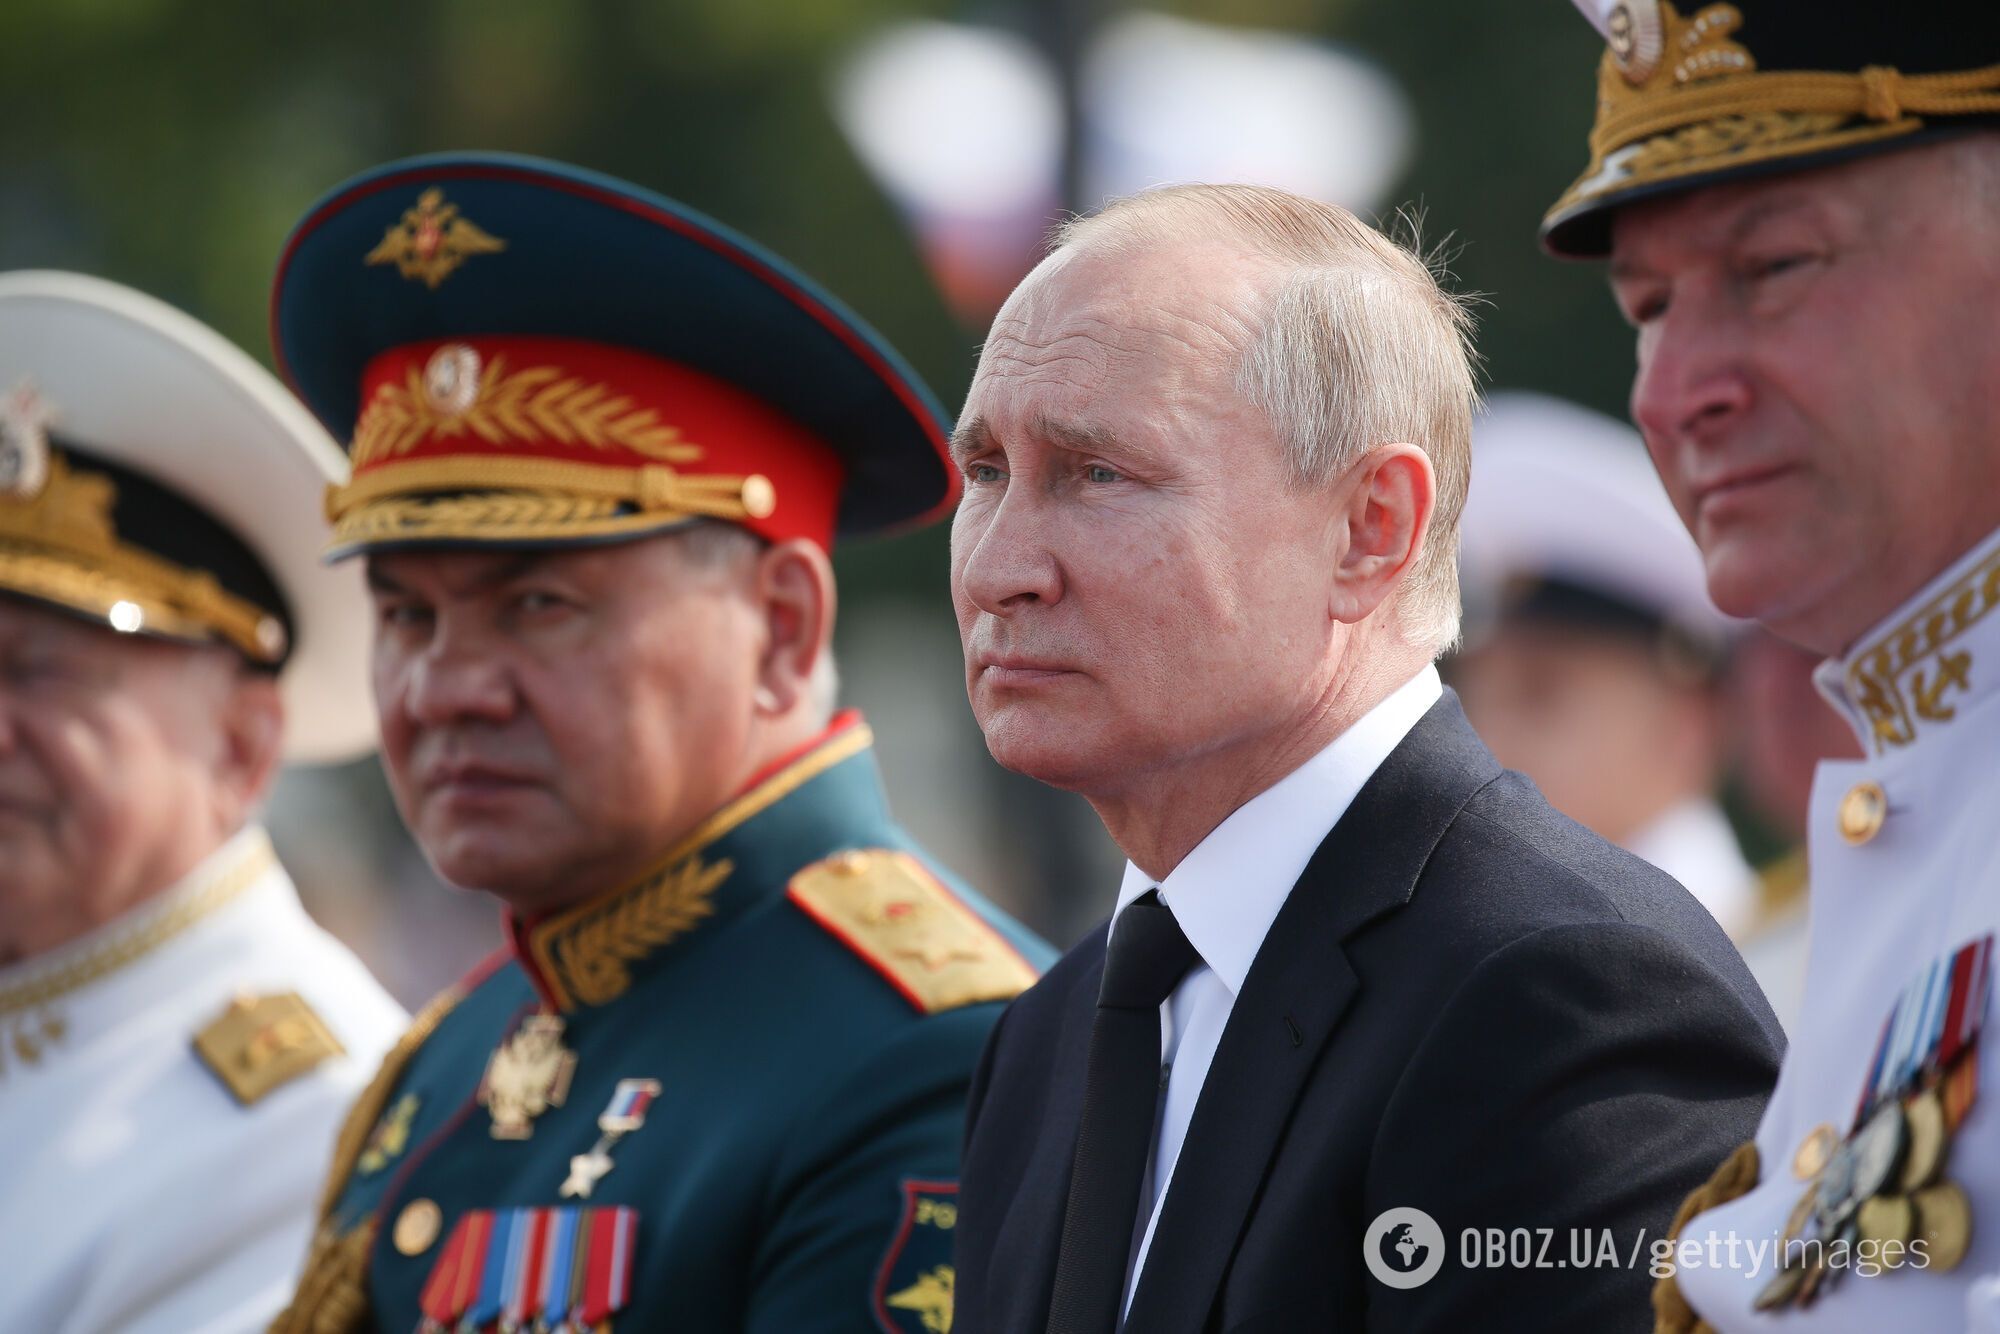 Климкин: НАТО может вступить в войну с Россией, Путин готов к расширению агрессии. Интервью